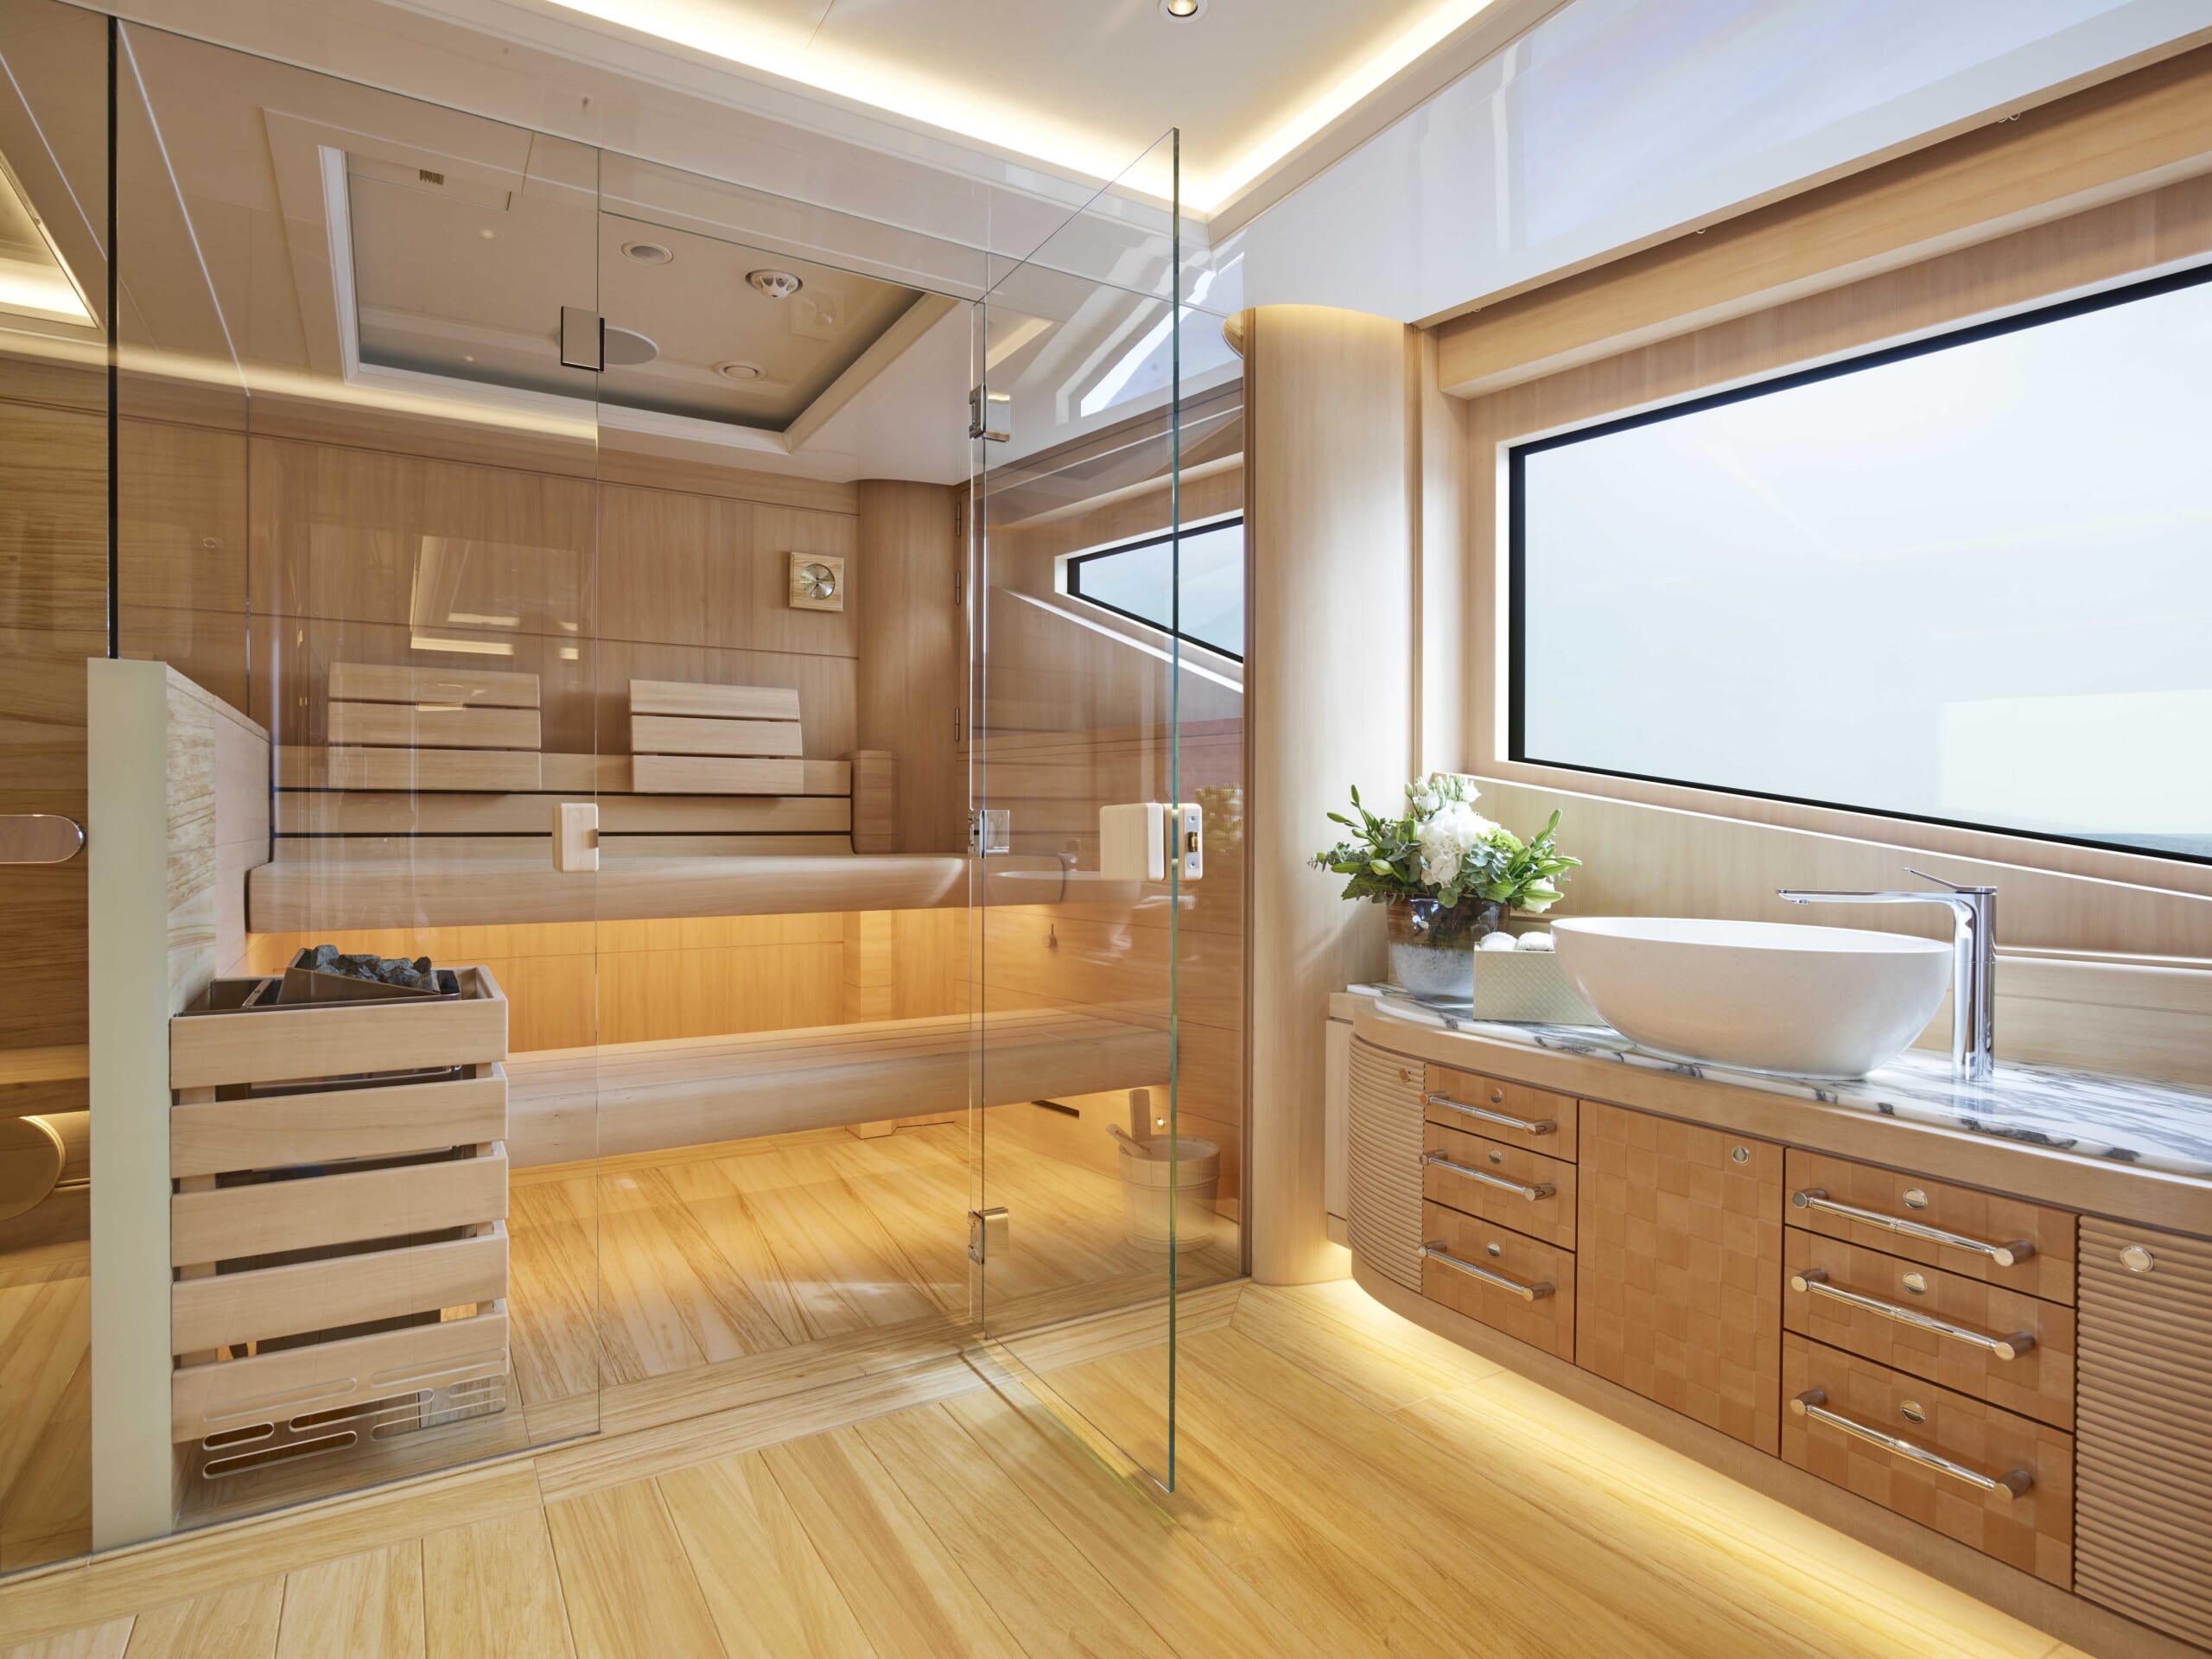 herb chambers yacht interior